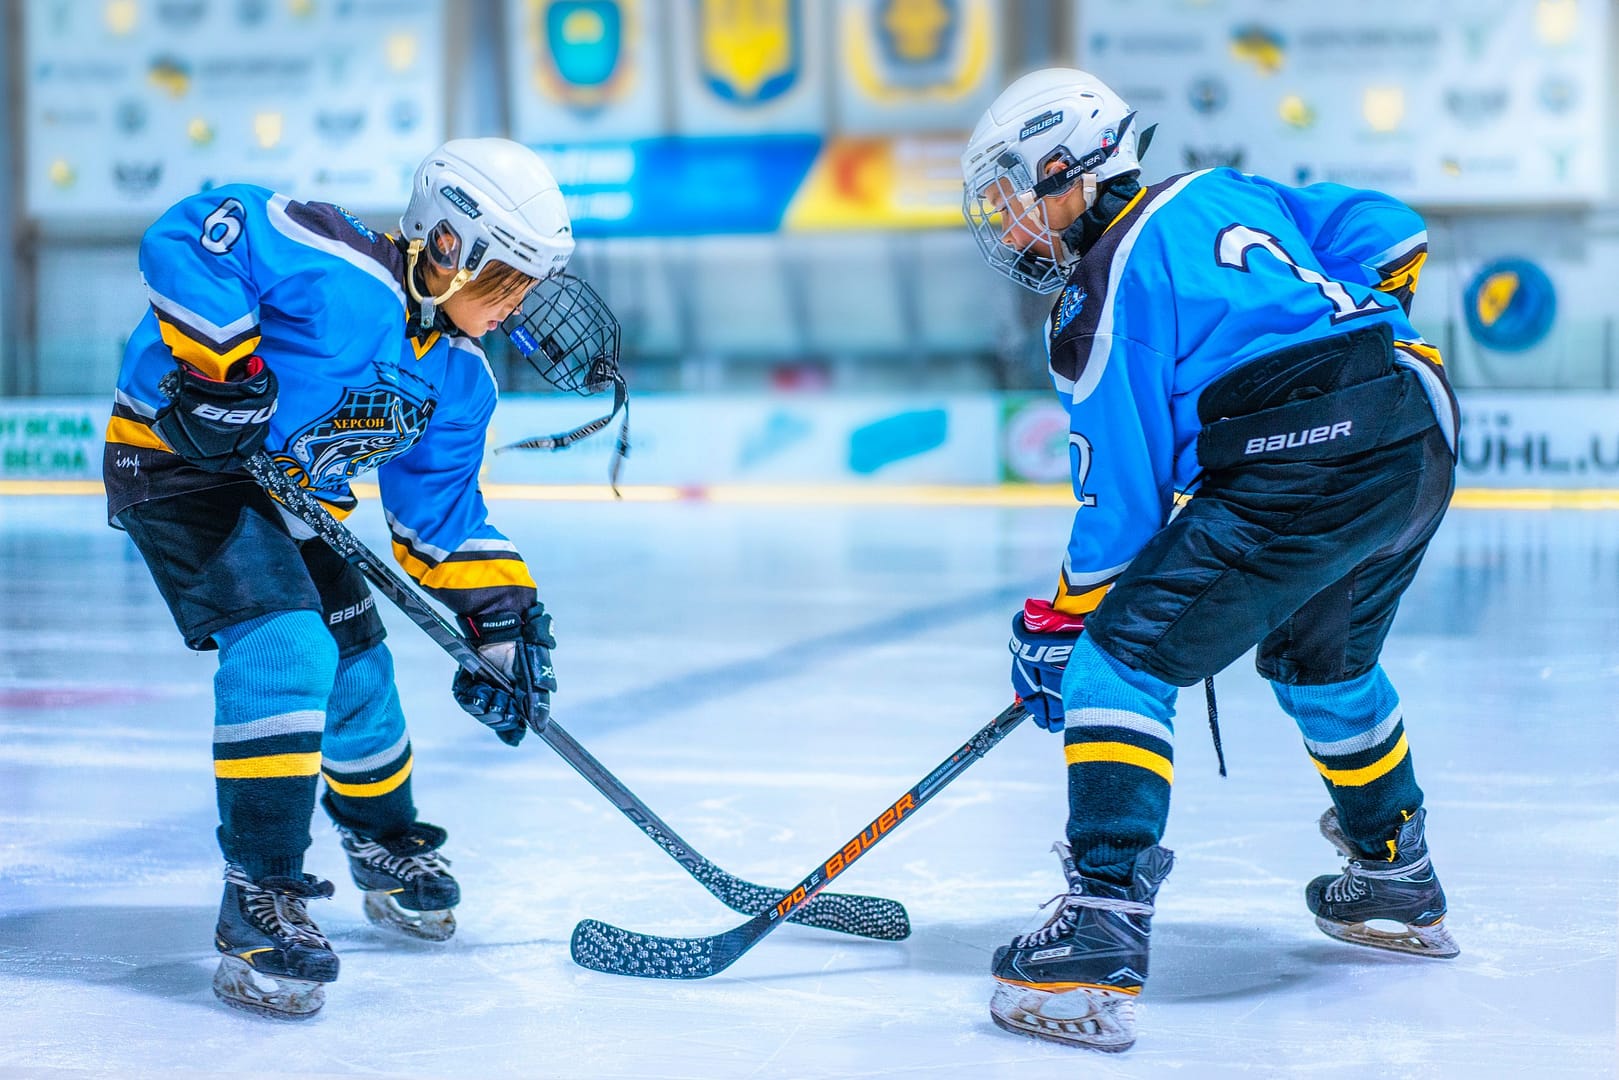 Zwei junge Eishockey-Spieler im Duell